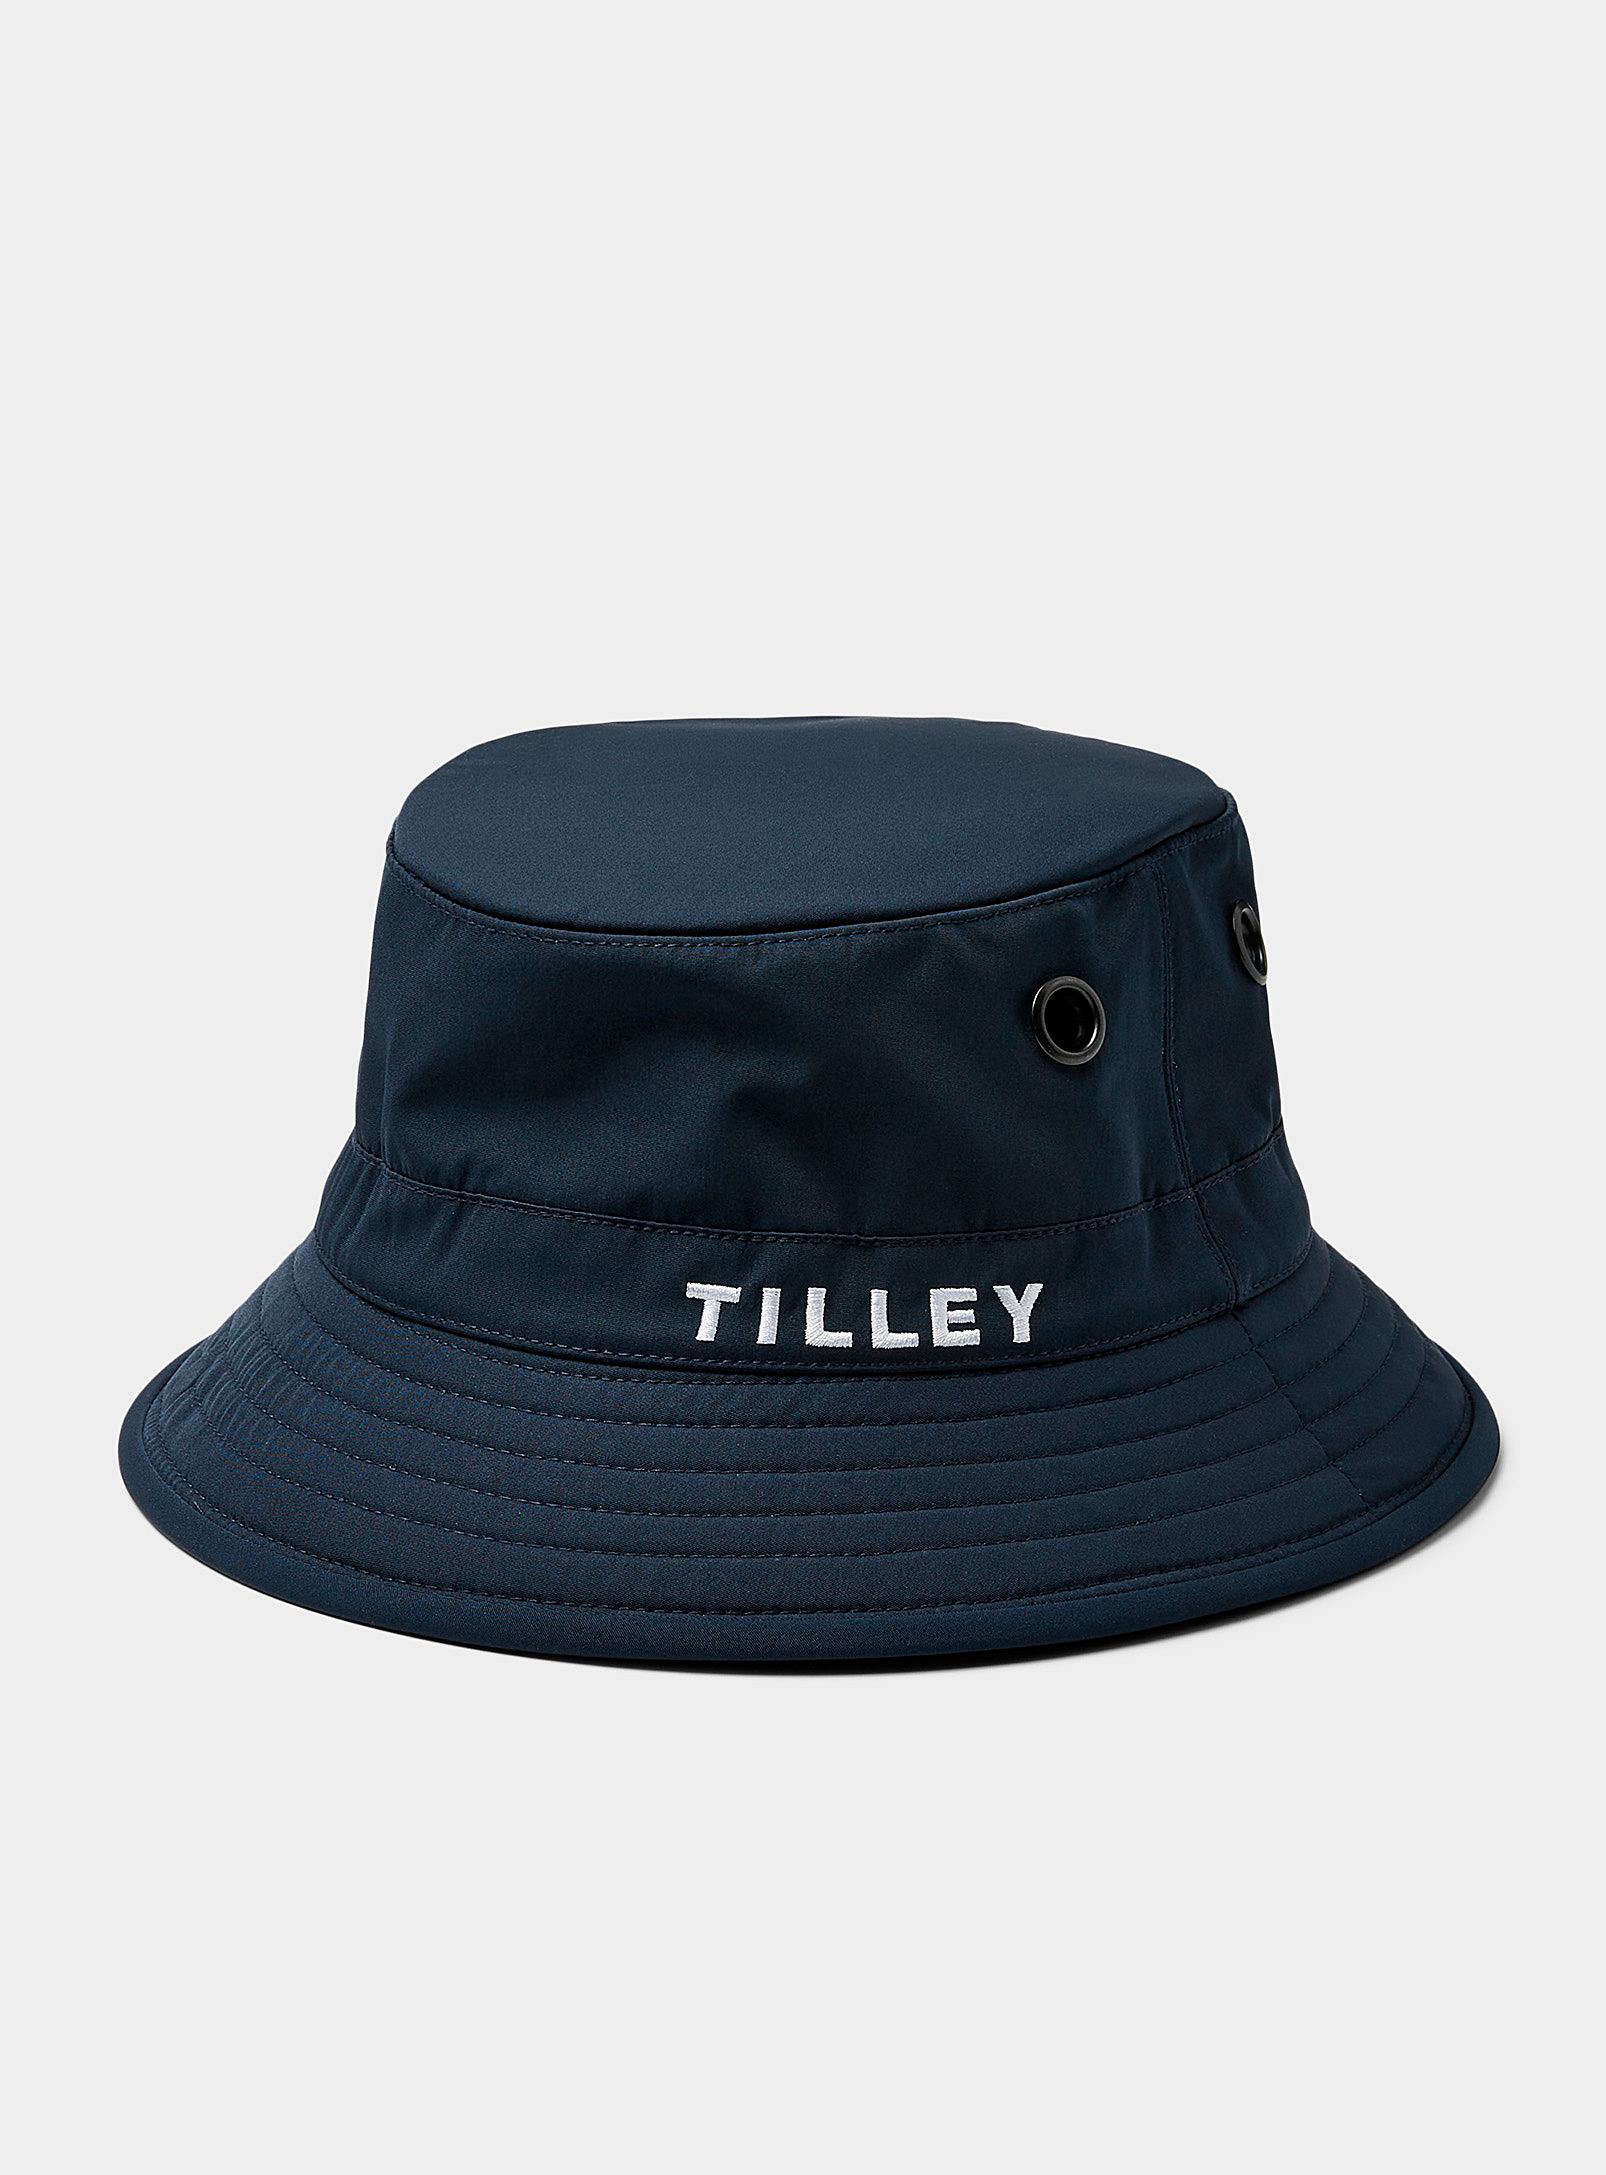 Tilley - Chapeau Le Bob signature brodée